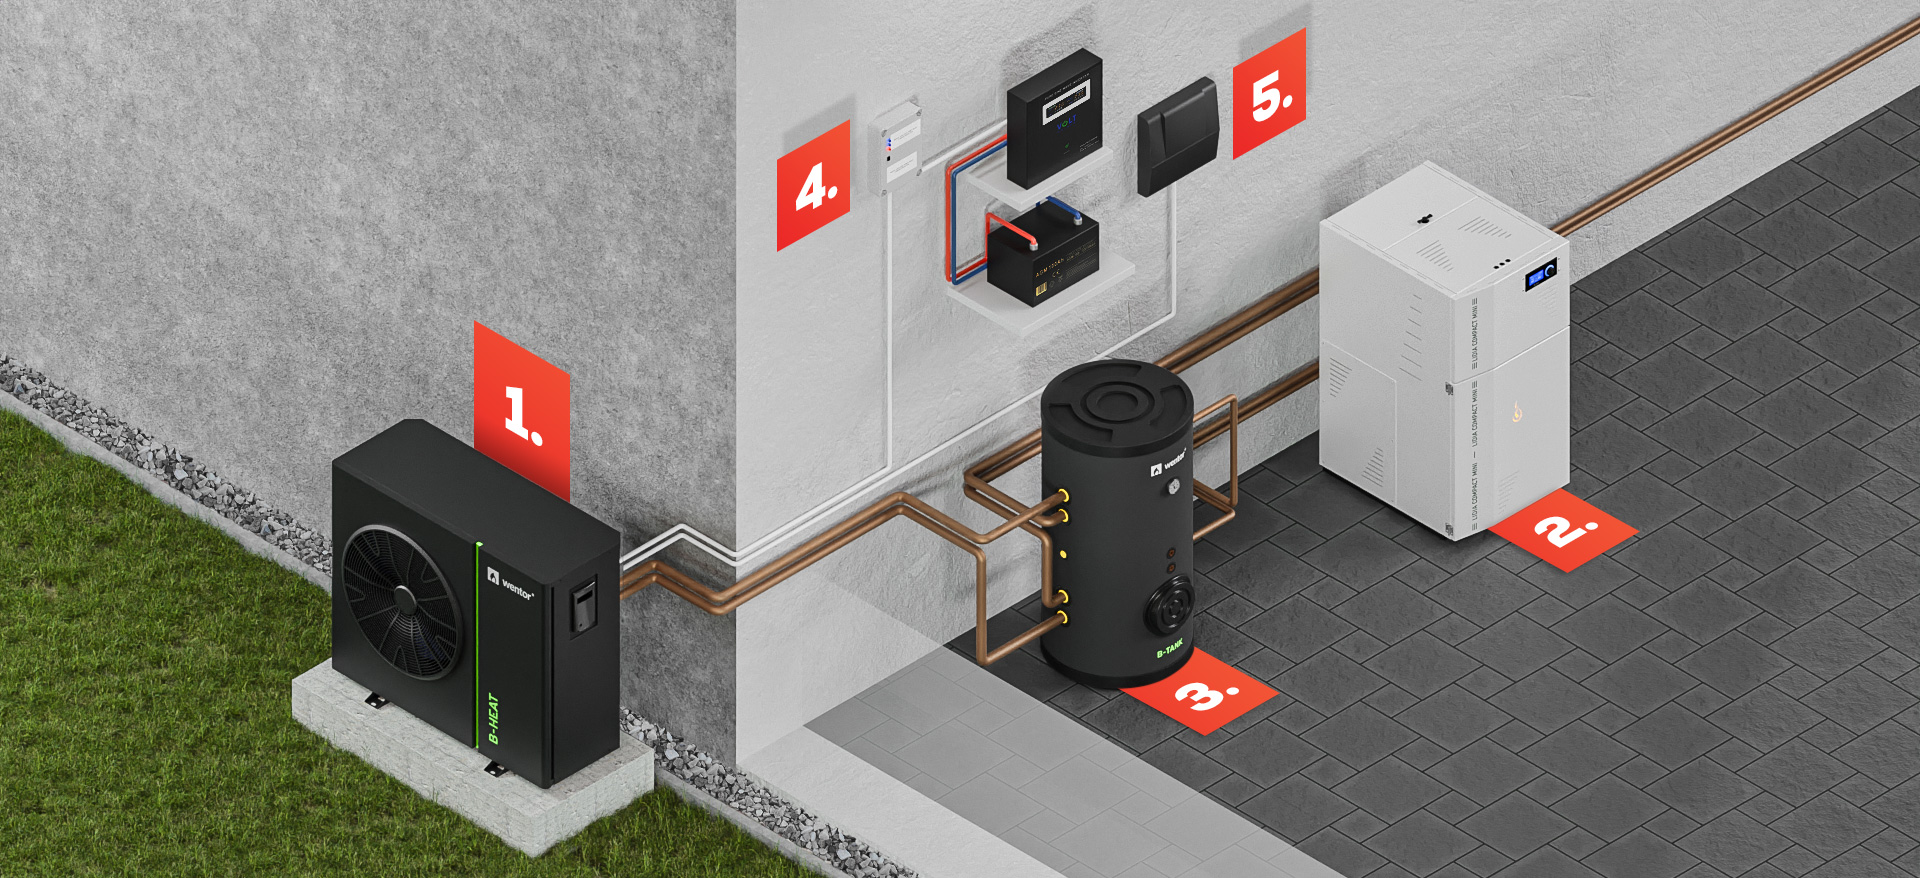 Wizualizacja schematu systemu hybrydowego: 1. Pompa ciepła, 2. Kocioł na pellet, 3. Zbiornik buforowy, 4. Sterownik na wypadek braku prądu, 5. Panel sterowania.